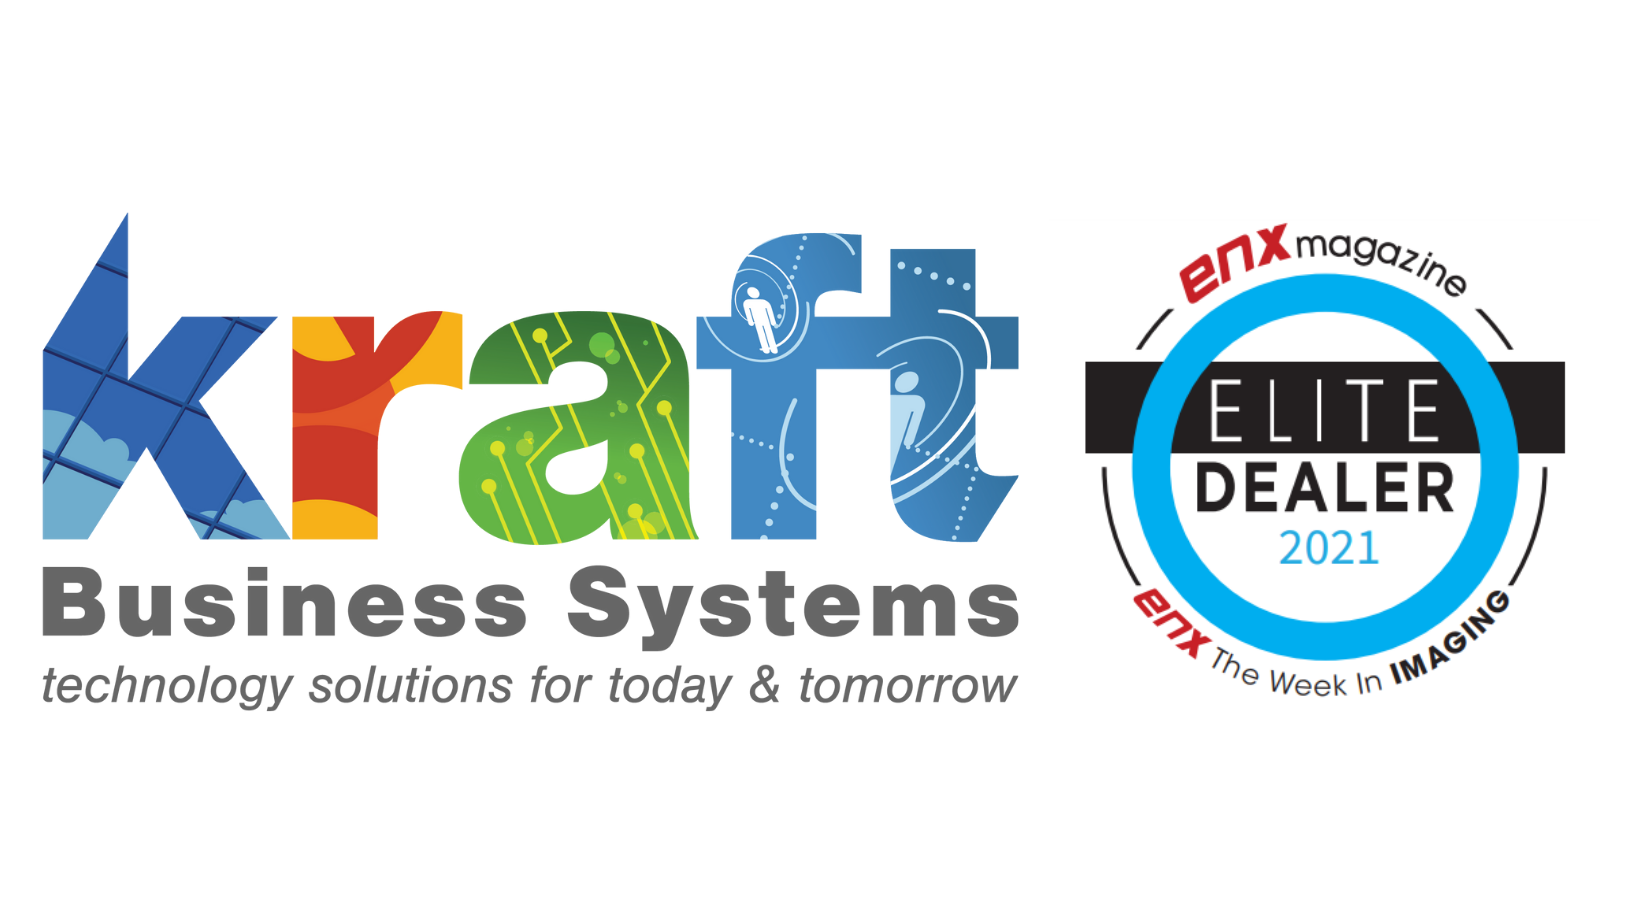 Kraft Business Systems Named Elite Dealer in 2021- ENX Magazine